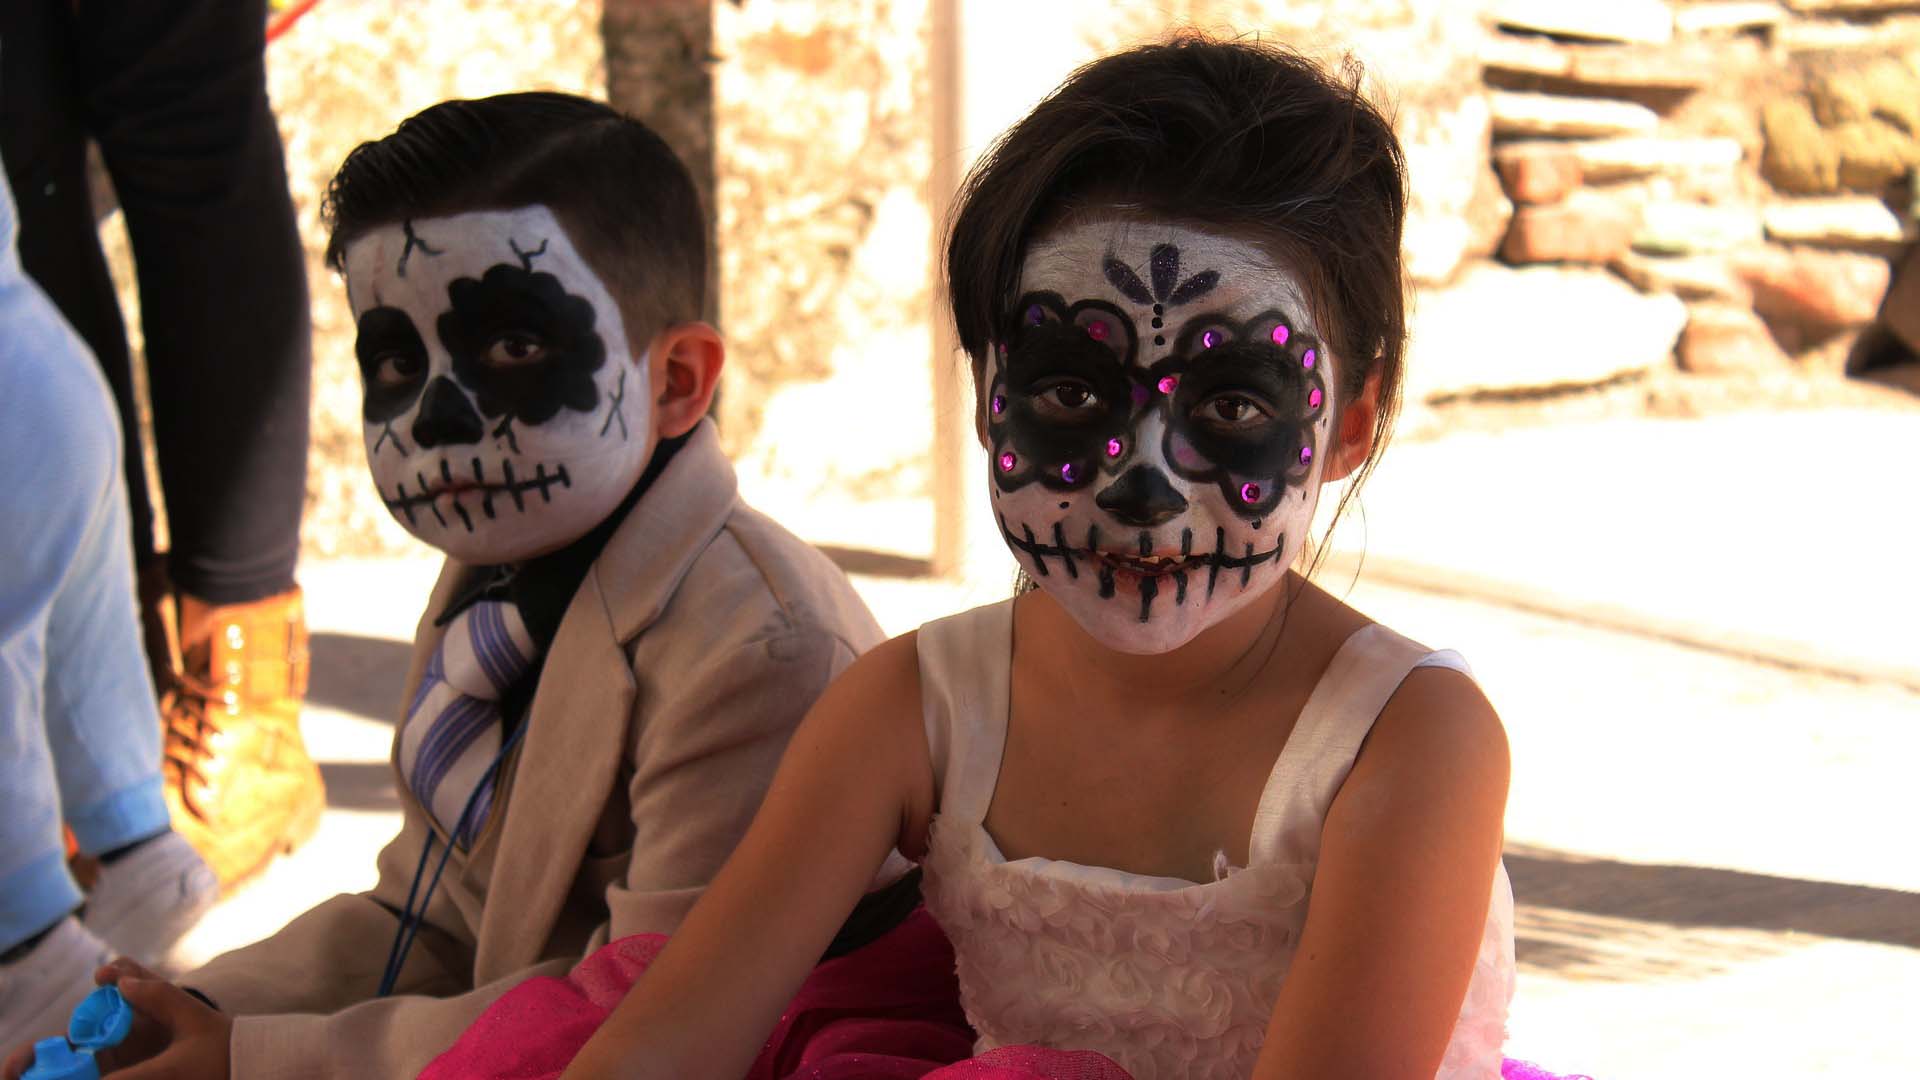 Halloweeni sminkek gyerekeknek: Lányoknak és fiúknak egyaránt című cikk borítóképe